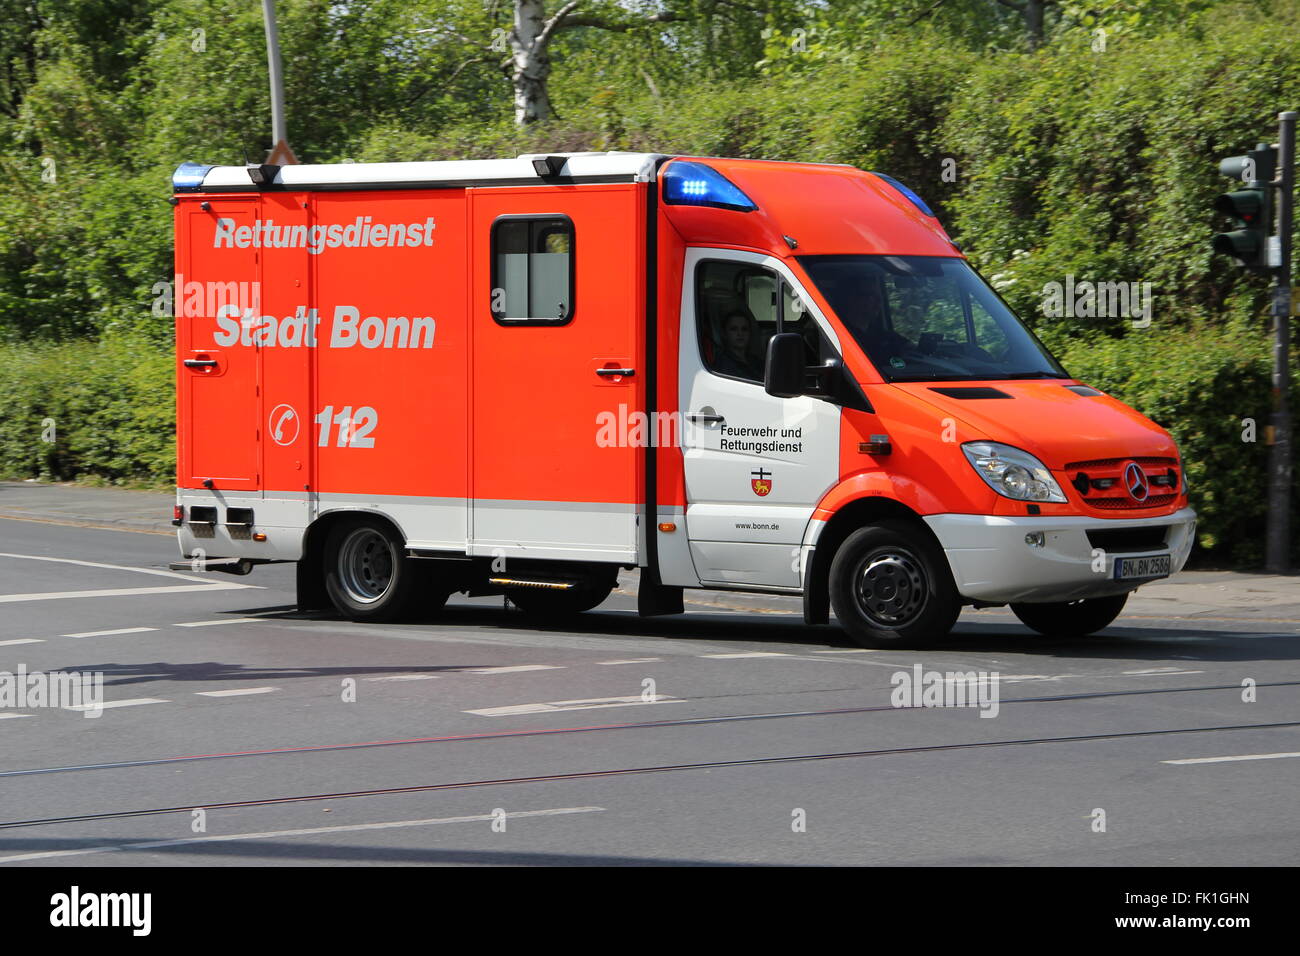 ambulance of the city of Bonn Stock Photo